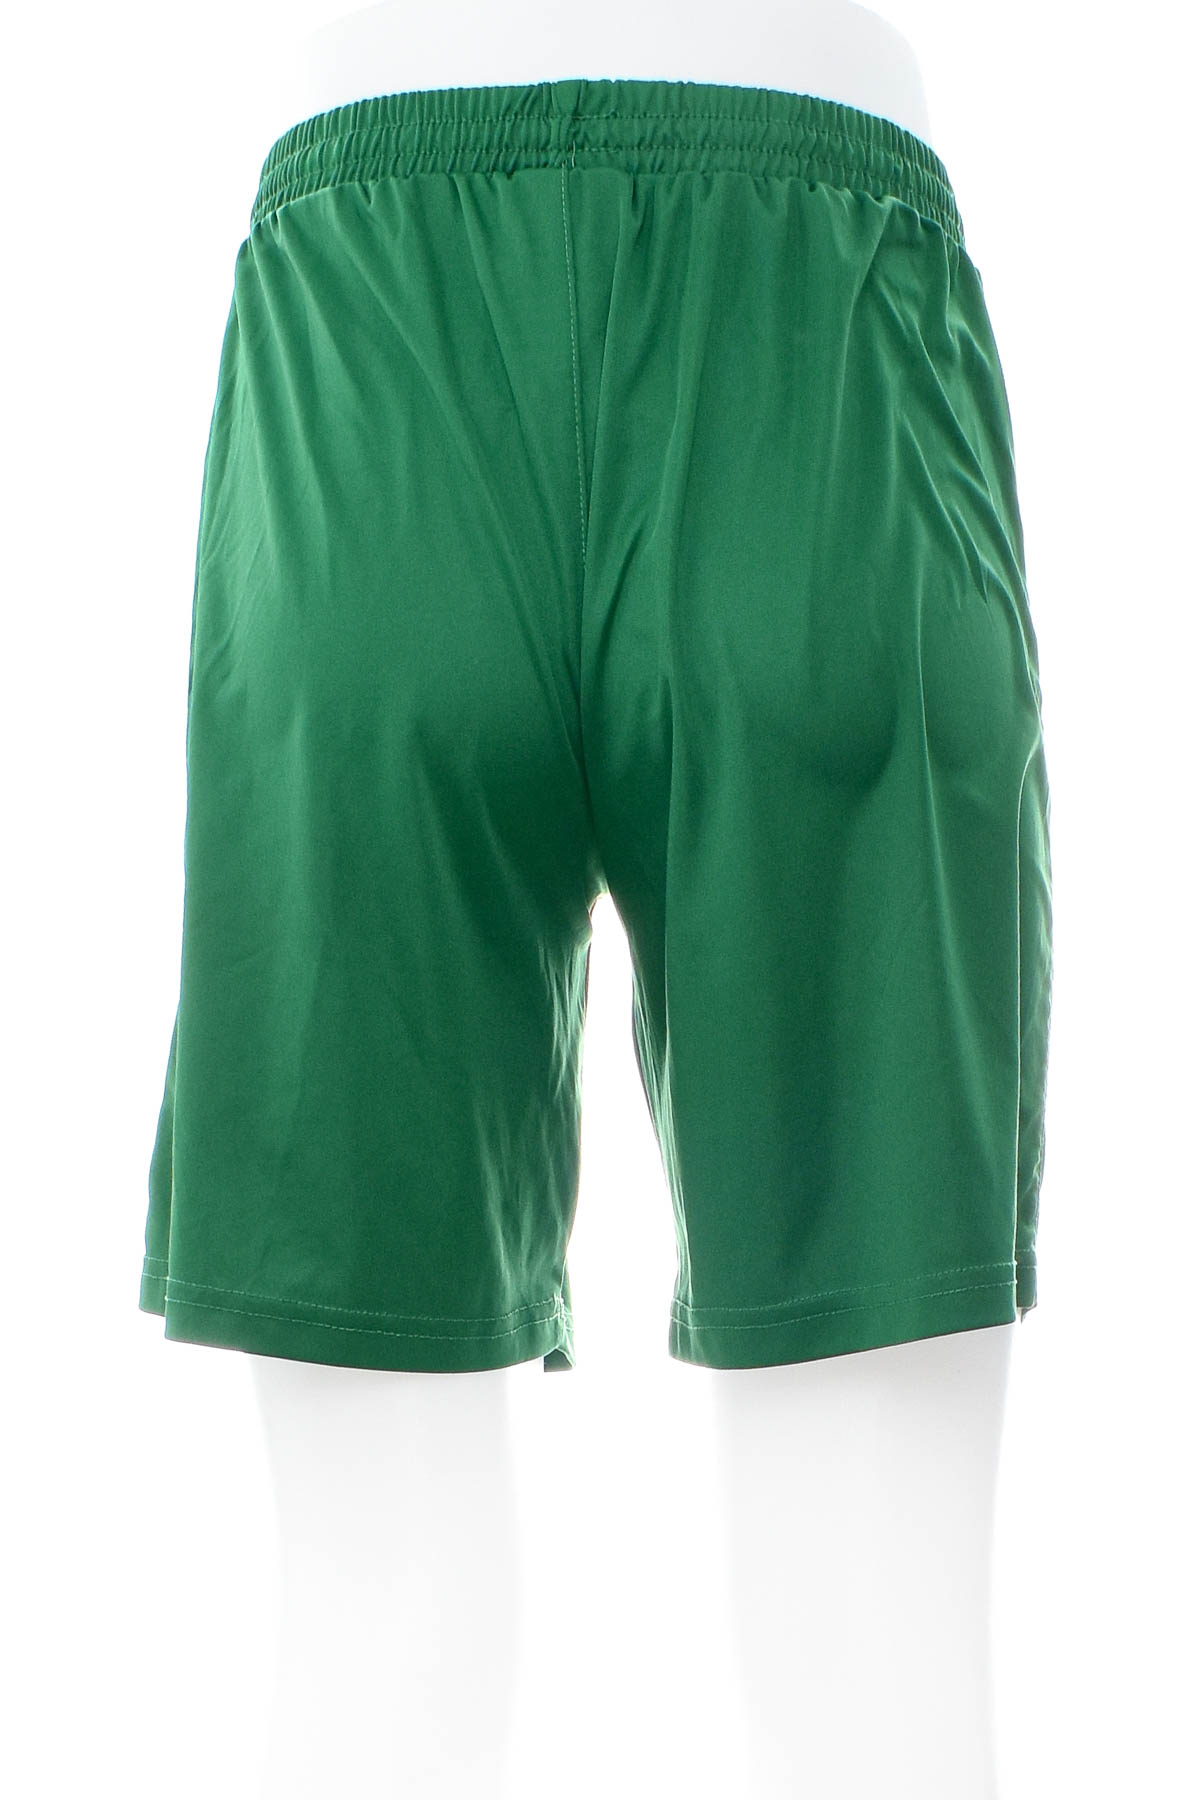 Men's shorts - Joma - 1